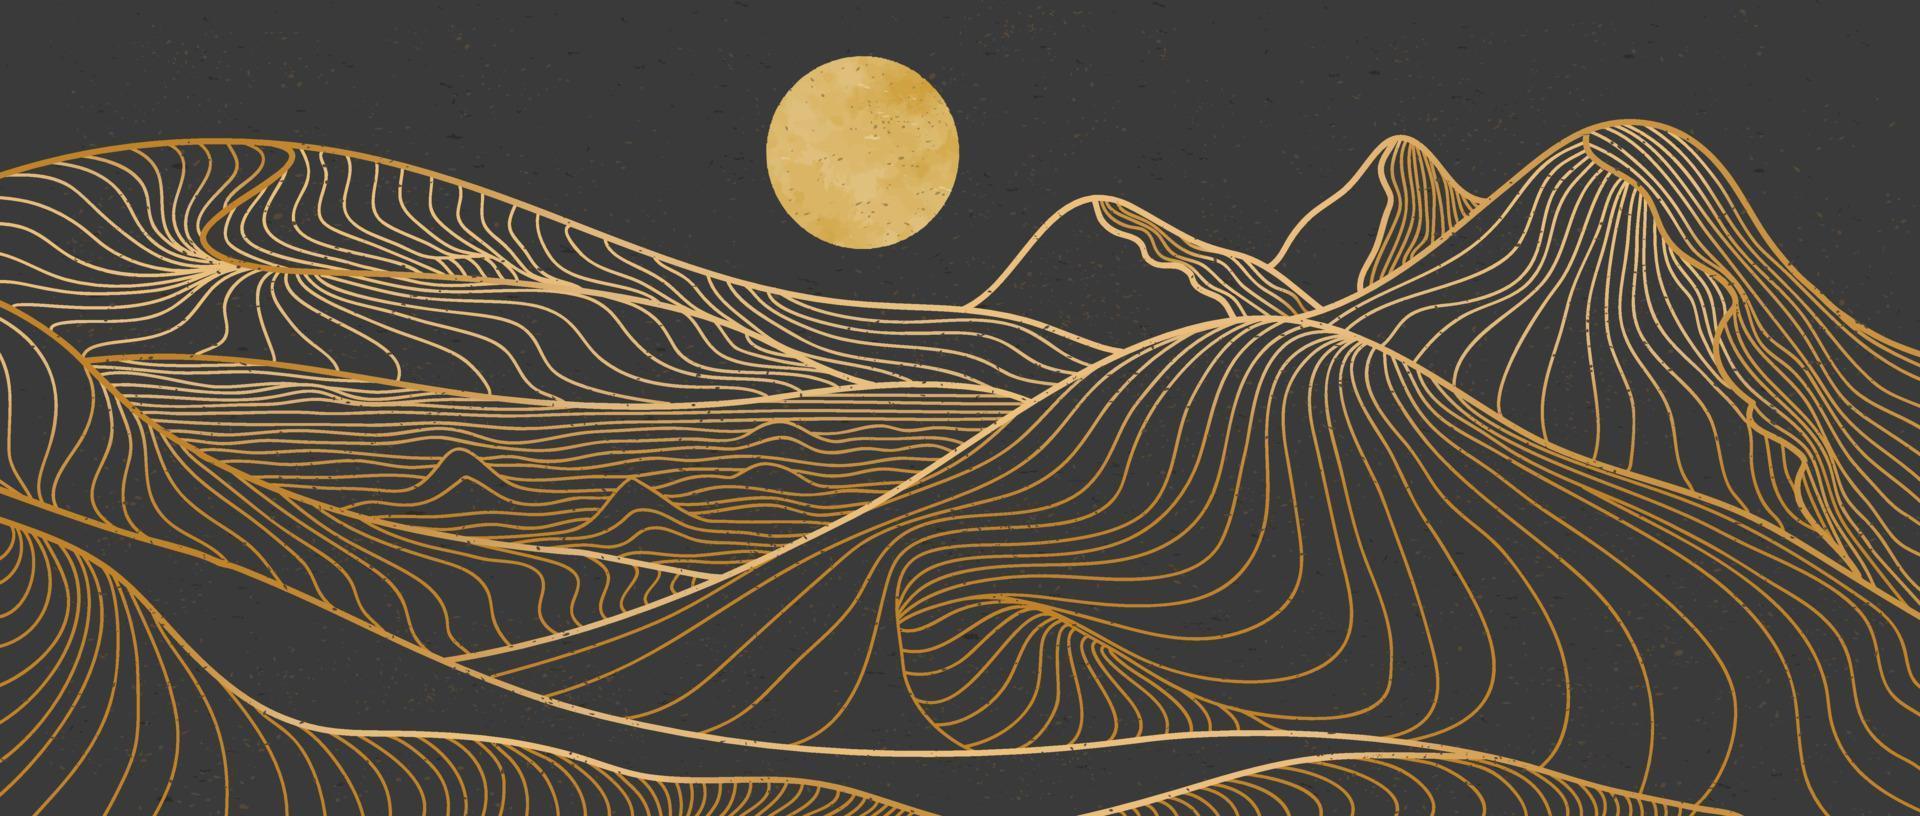 arte della linea di montagna dorata, paesaggi di sfondi estetici contemporanei di montagna astratta. utilizzare per stampa artistica, copertina, sfondo invito, tessuto. illustrazione vettoriale